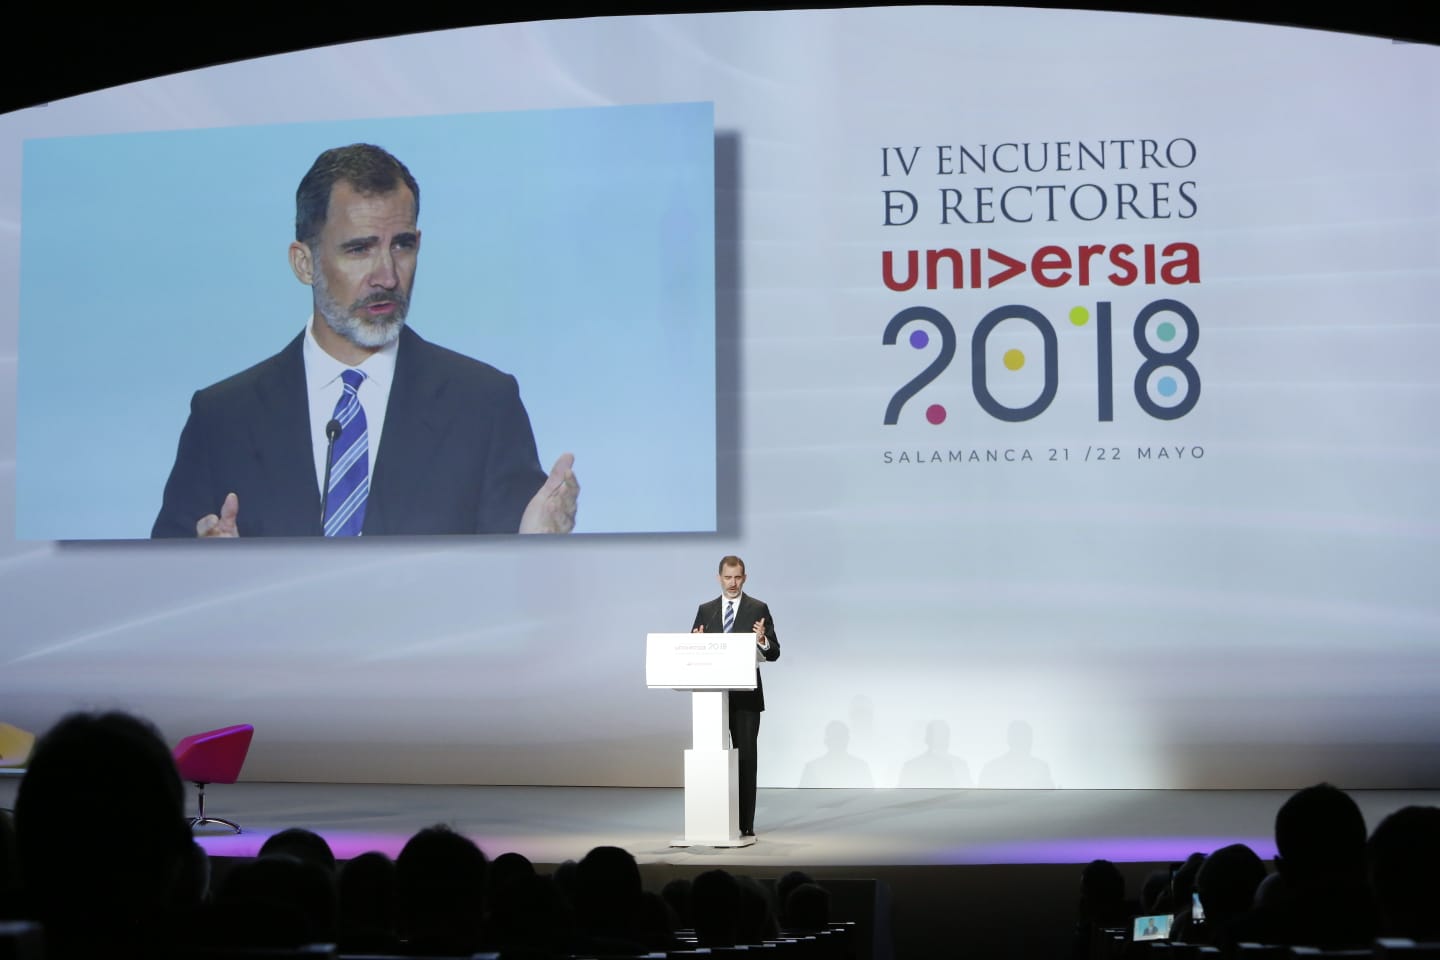 Fotos: Felipe VI inaugura el encuentro de rectores Uiversia en Salamanca